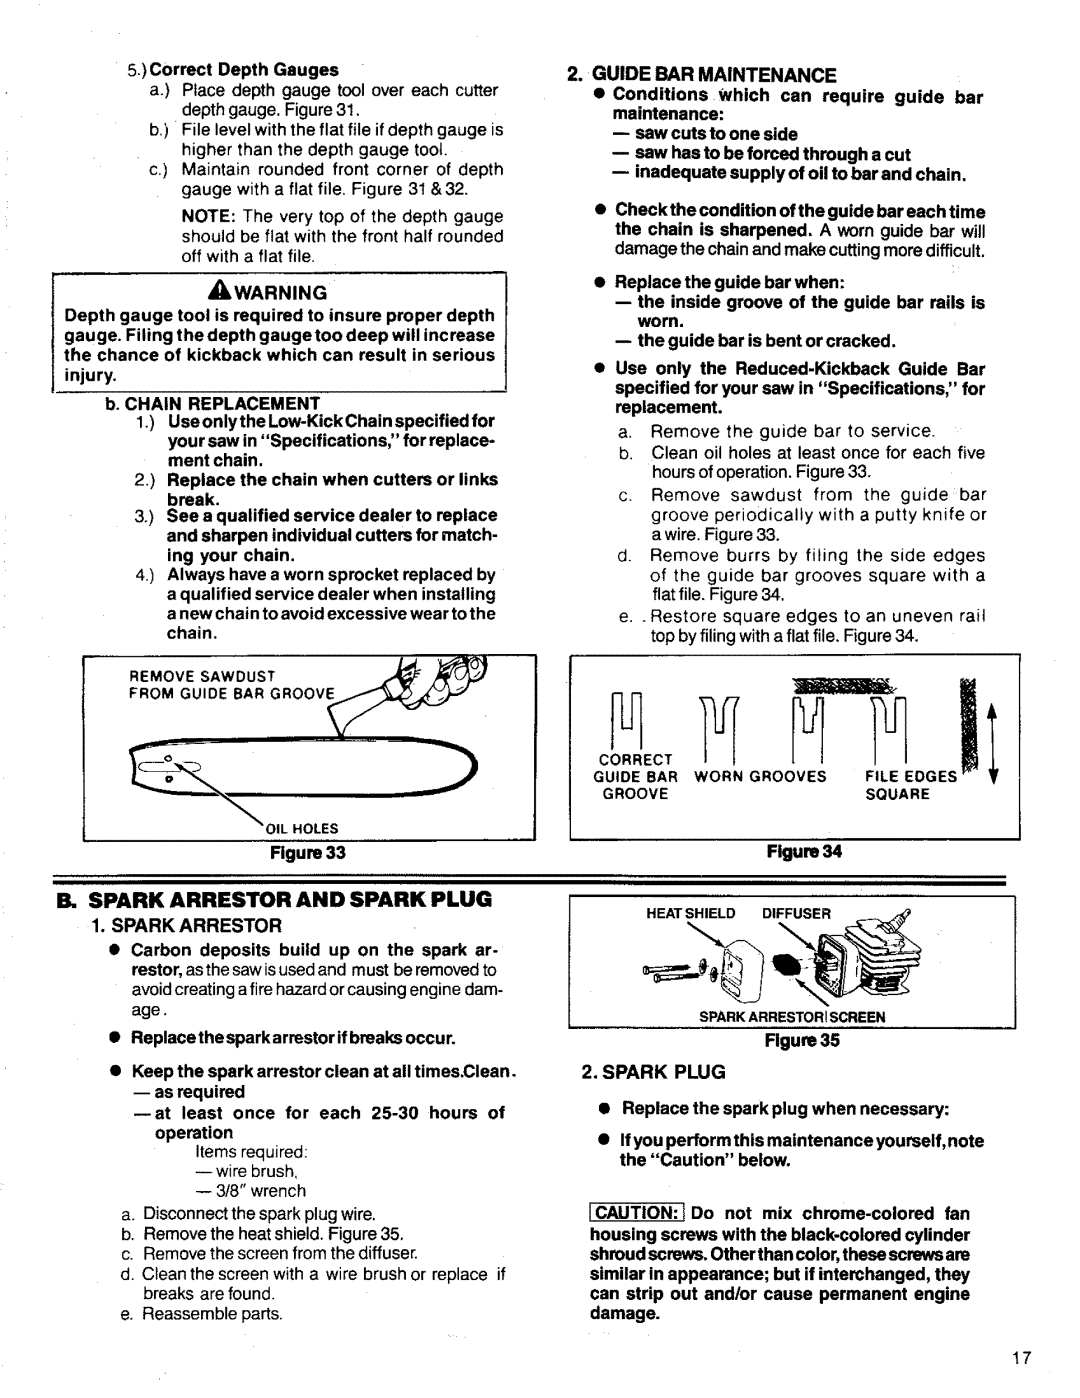 Poulan 3300 manual B, Spark Arrestor And Spark Plug, Figurs 